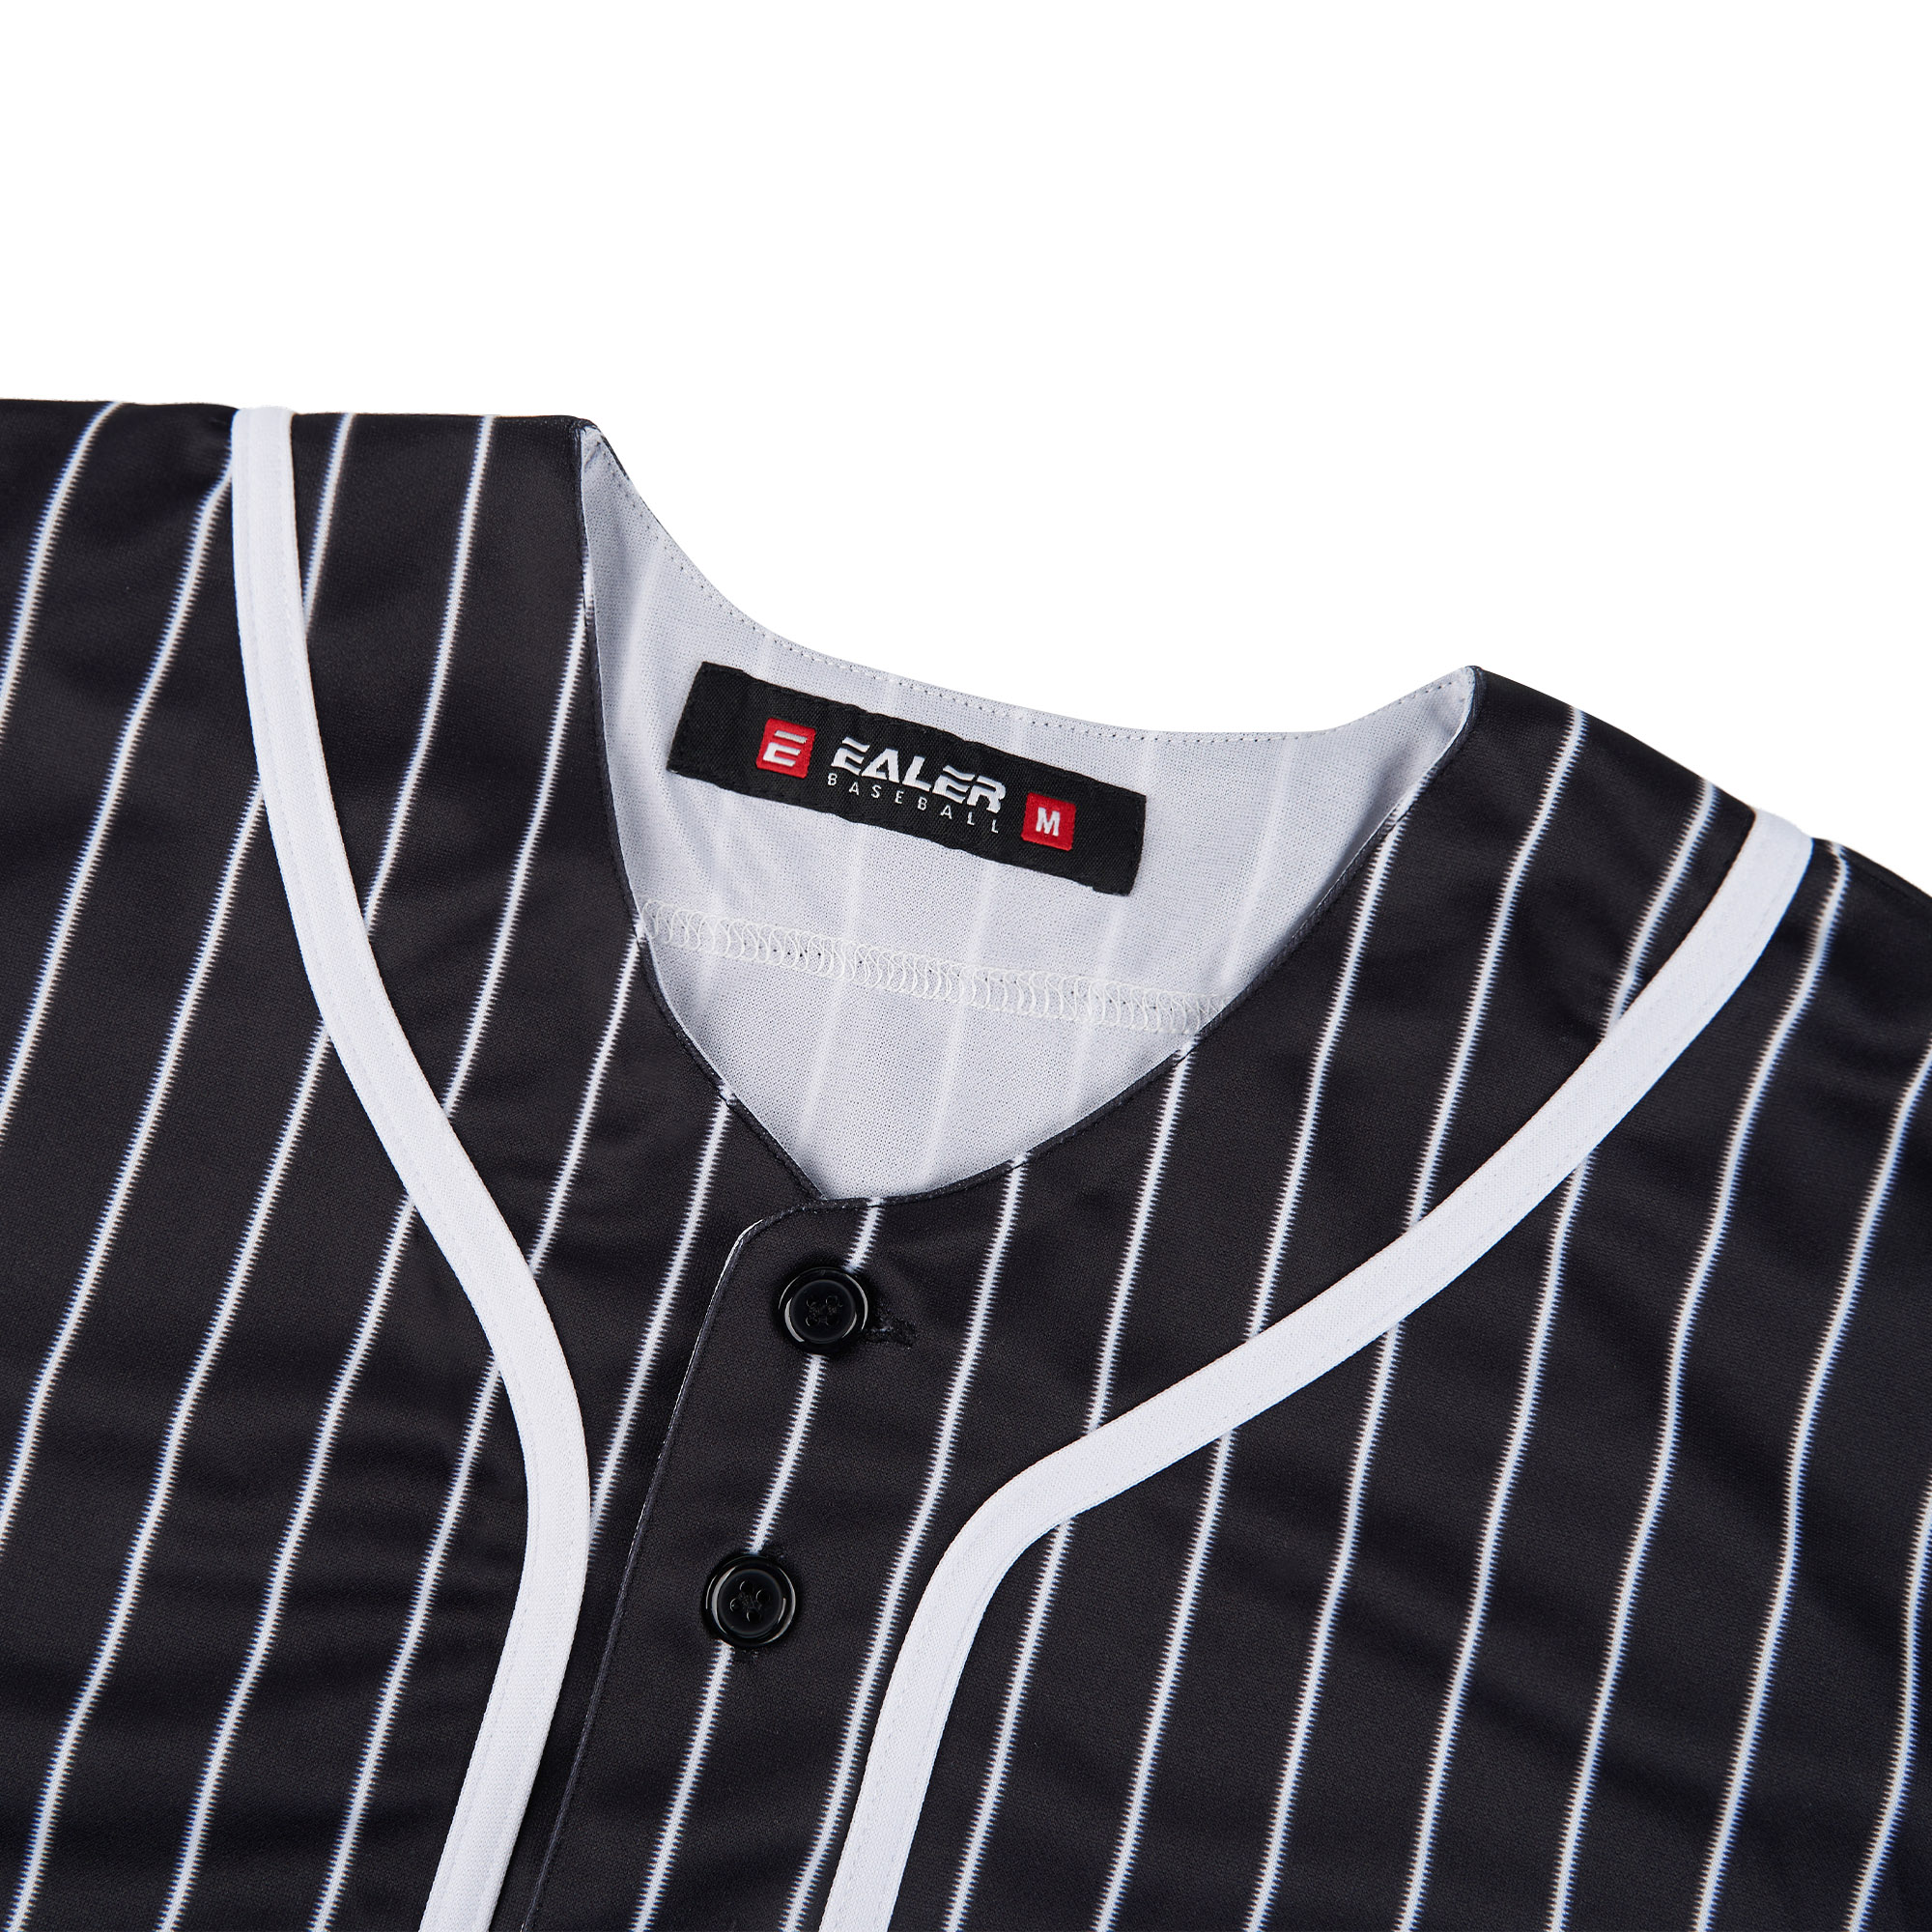 EALER BJ80 Series Mens Baseball Jersey Button Down Shirts Short